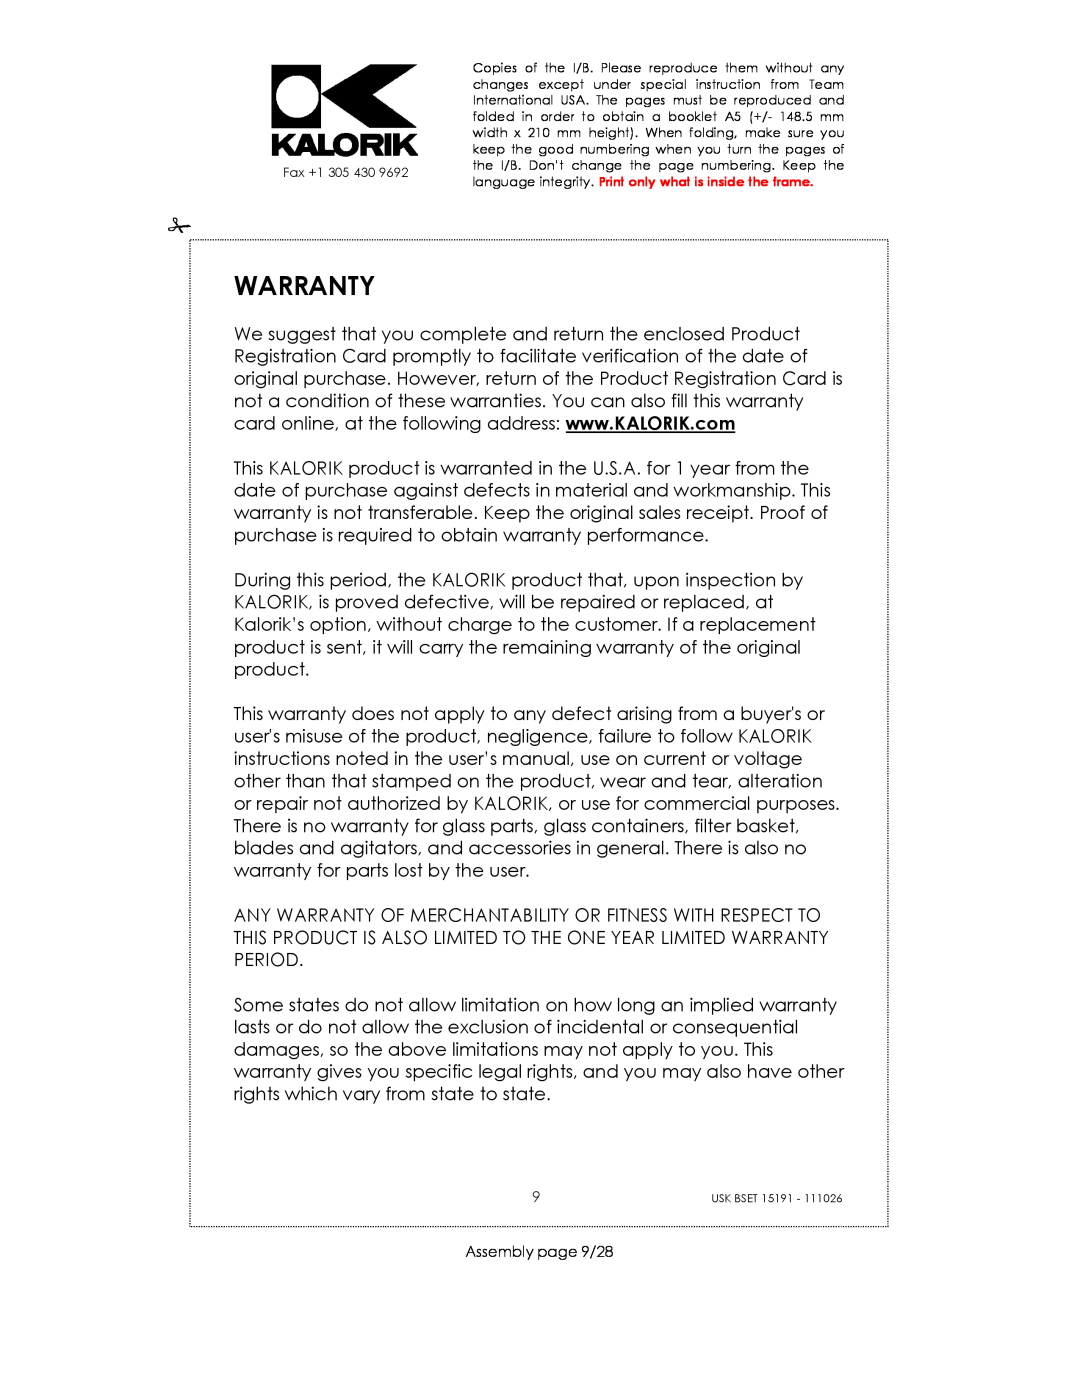 Kalorik USK BSET 15191 manual Warranty, Assembly page 9/28 